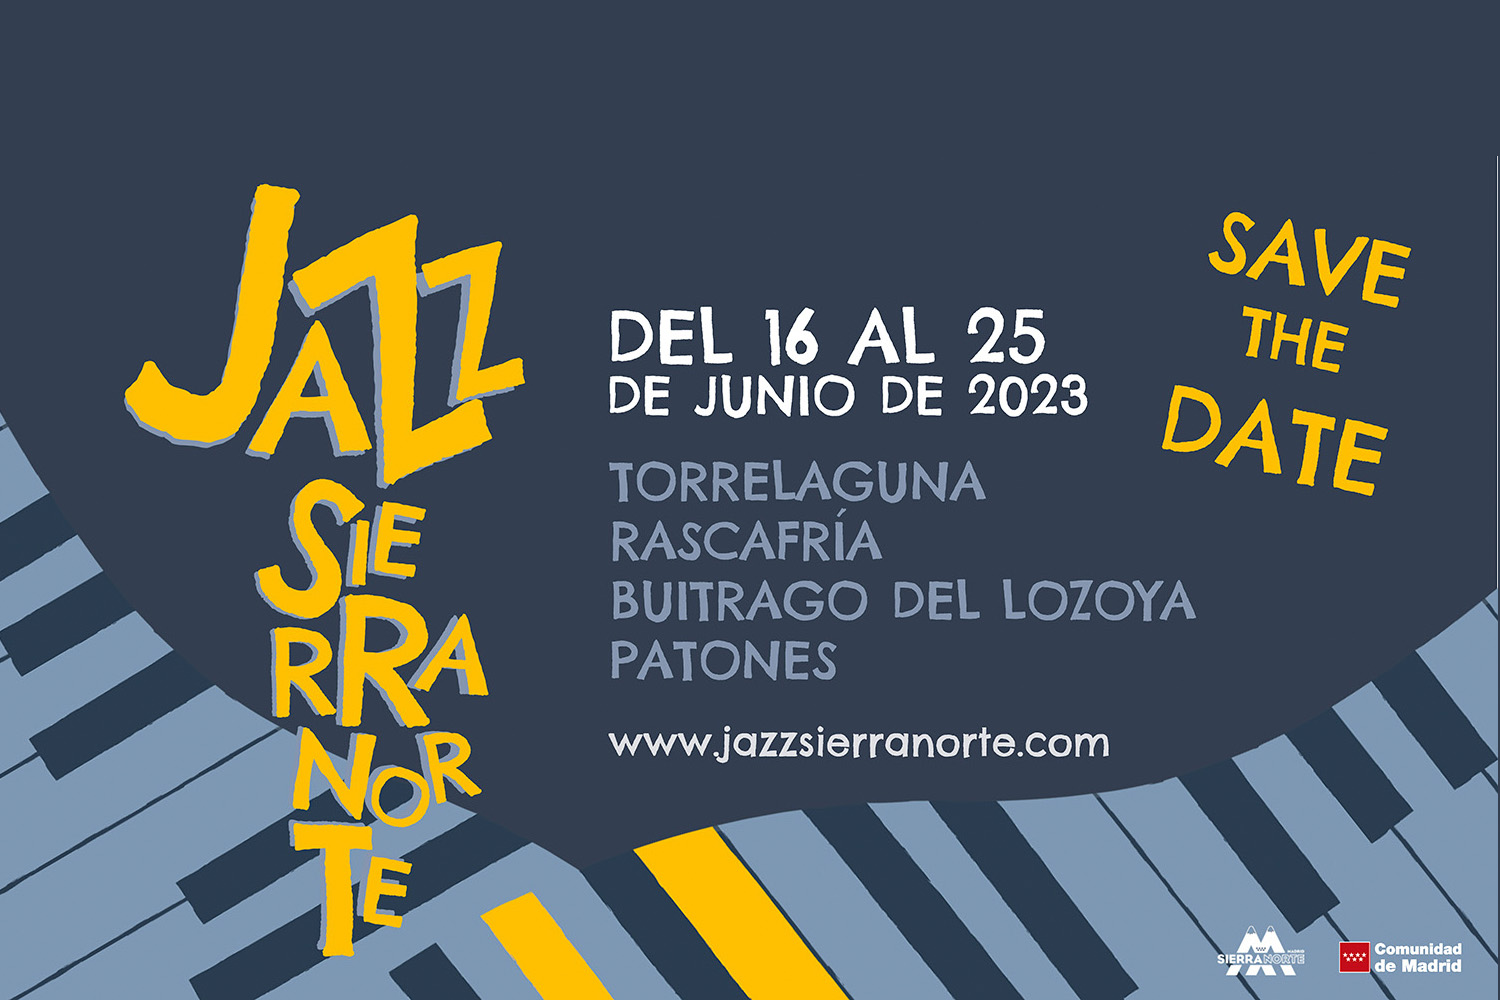 El Festival de Jazz Sierra Norte contará con escenarios singulares